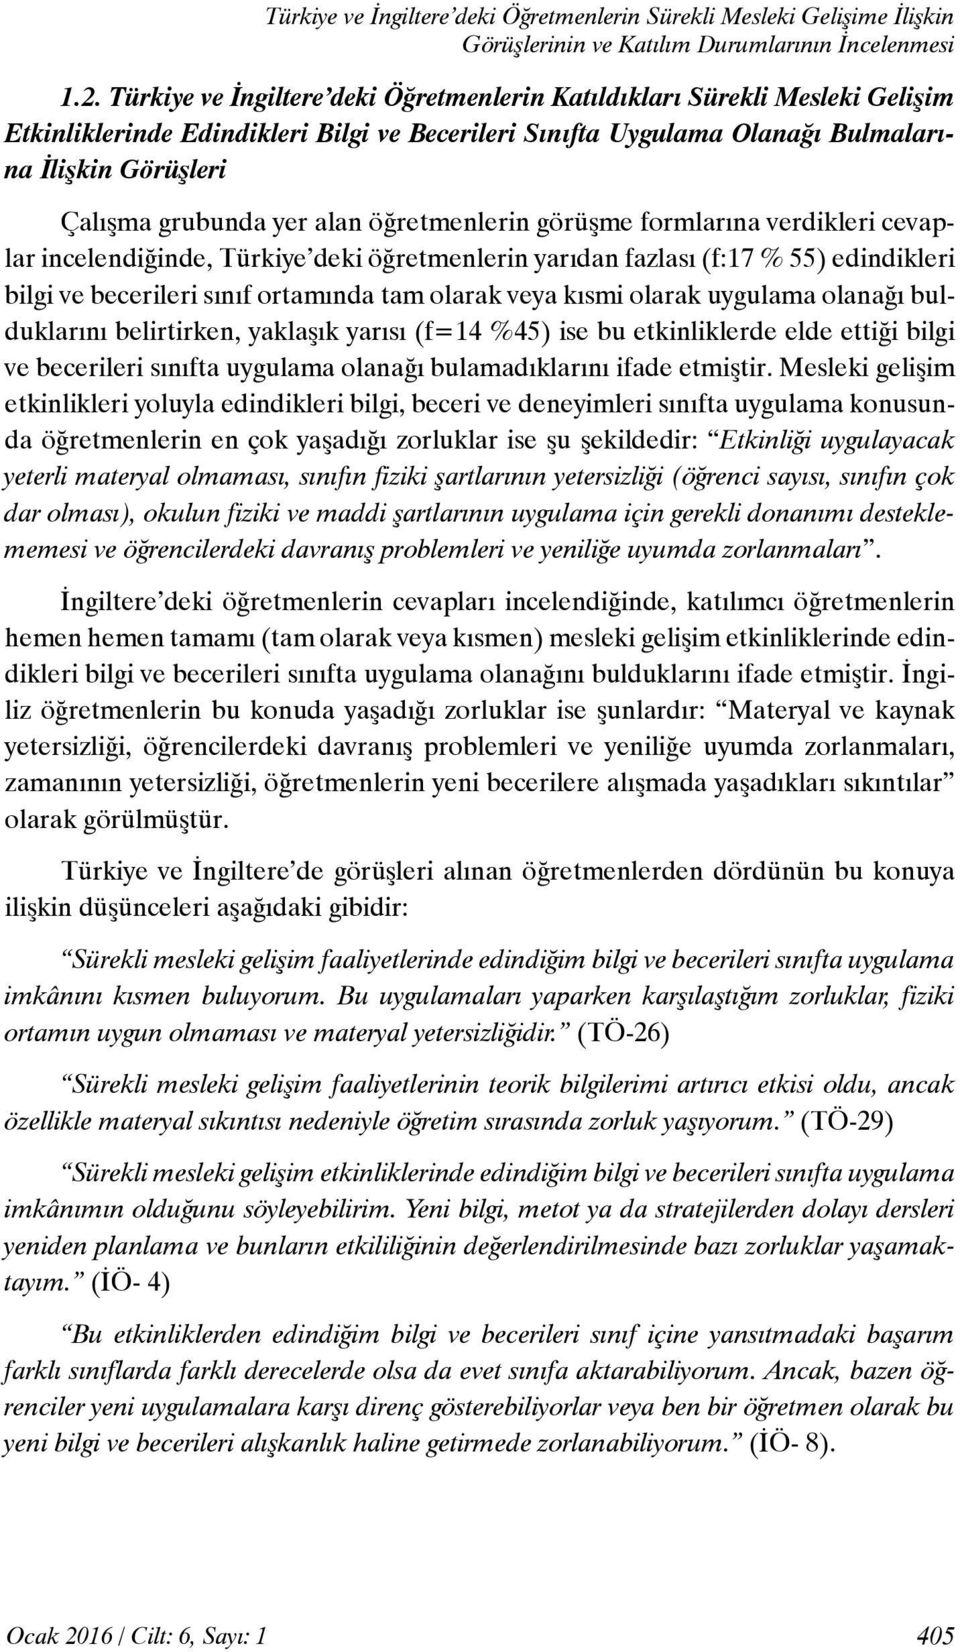 yer alan öğretmenlerin görüşme formlarına verdikleri cevaplar incelendiğinde, Türkiye deki öğretmenlerin yarıdan fazlası (f:17 % 55) edindikleri bilgi ve becerileri sınıf ortamında tam olarak veya